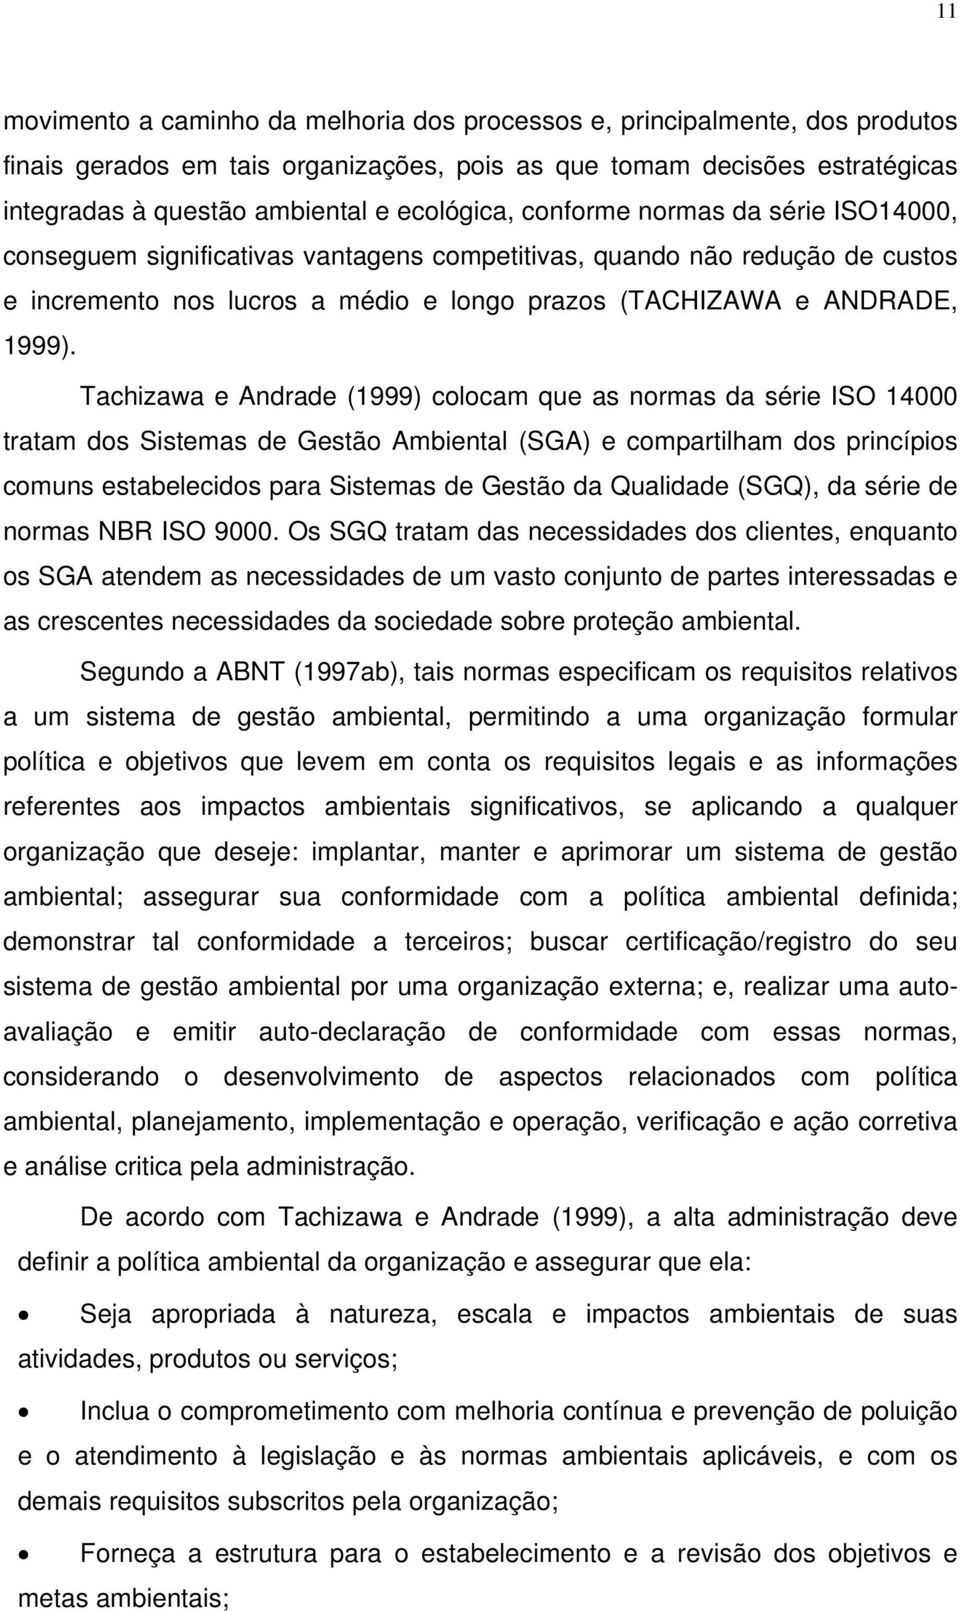 Tachizawa e Andrade (1999) colocam que as normas da série ISO 14000 tratam dos Sistemas de Gestão Ambiental (SGA) e compartilham dos princípios comuns estabelecidos para Sistemas de Gestão da